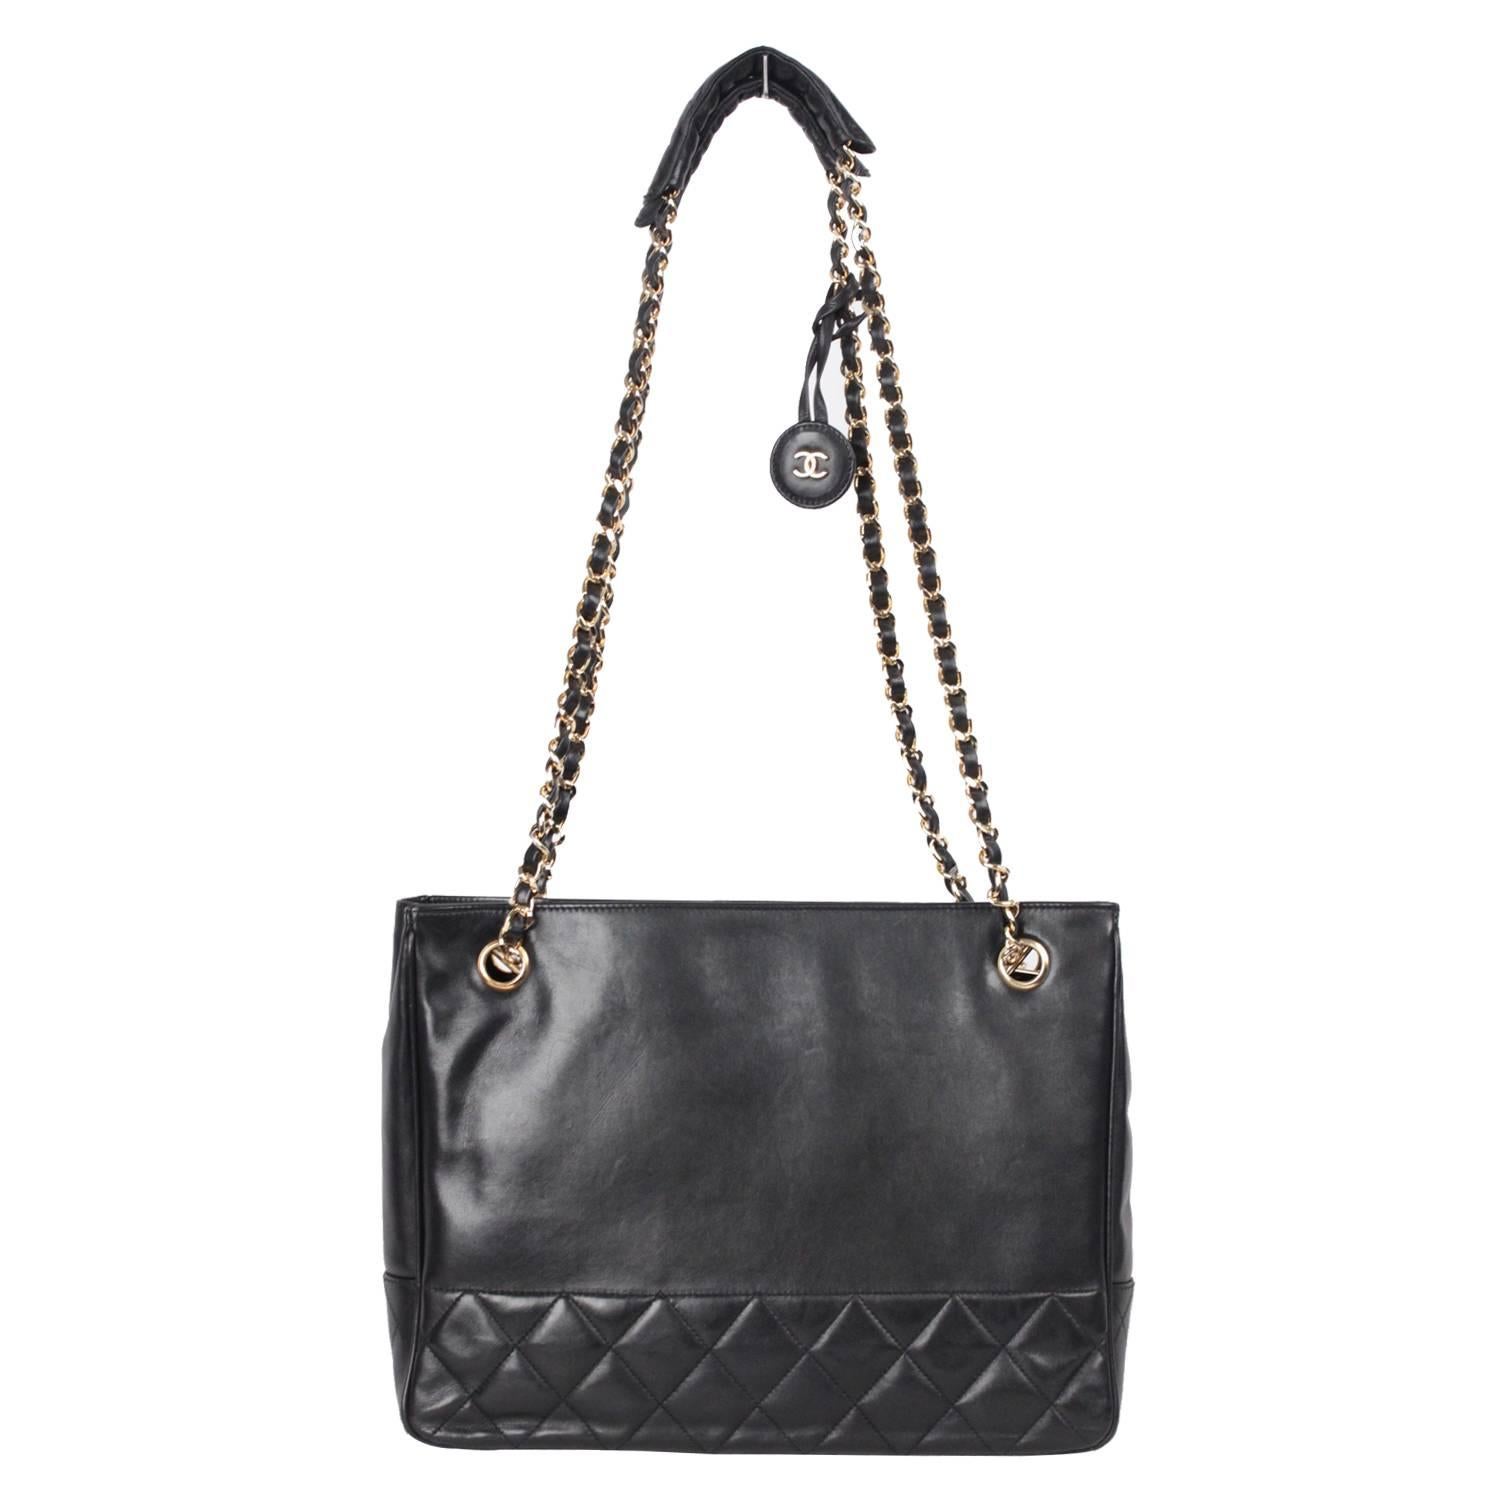 CHANEL Vintage Black Leather SHOULDER BAG Tote w/ Bottom Quilting